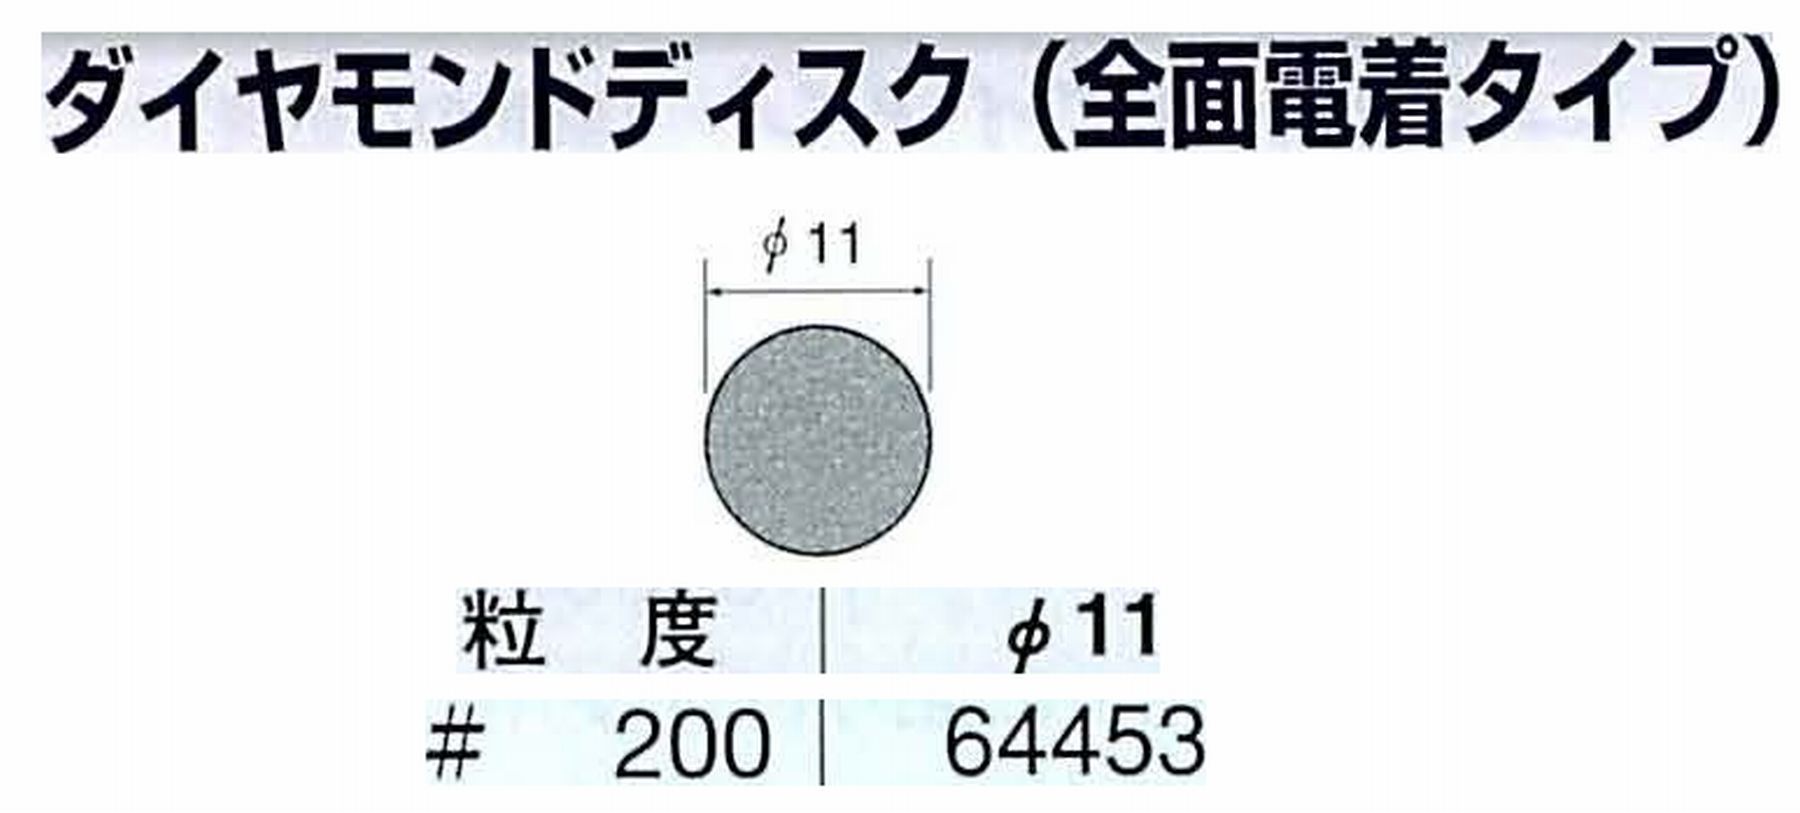 ナカニシ/NAKANISHI アングルグラインダ(電動・エアー) アングルアタッチメント専用工具 ダイヤモンドディスク : 値打価格